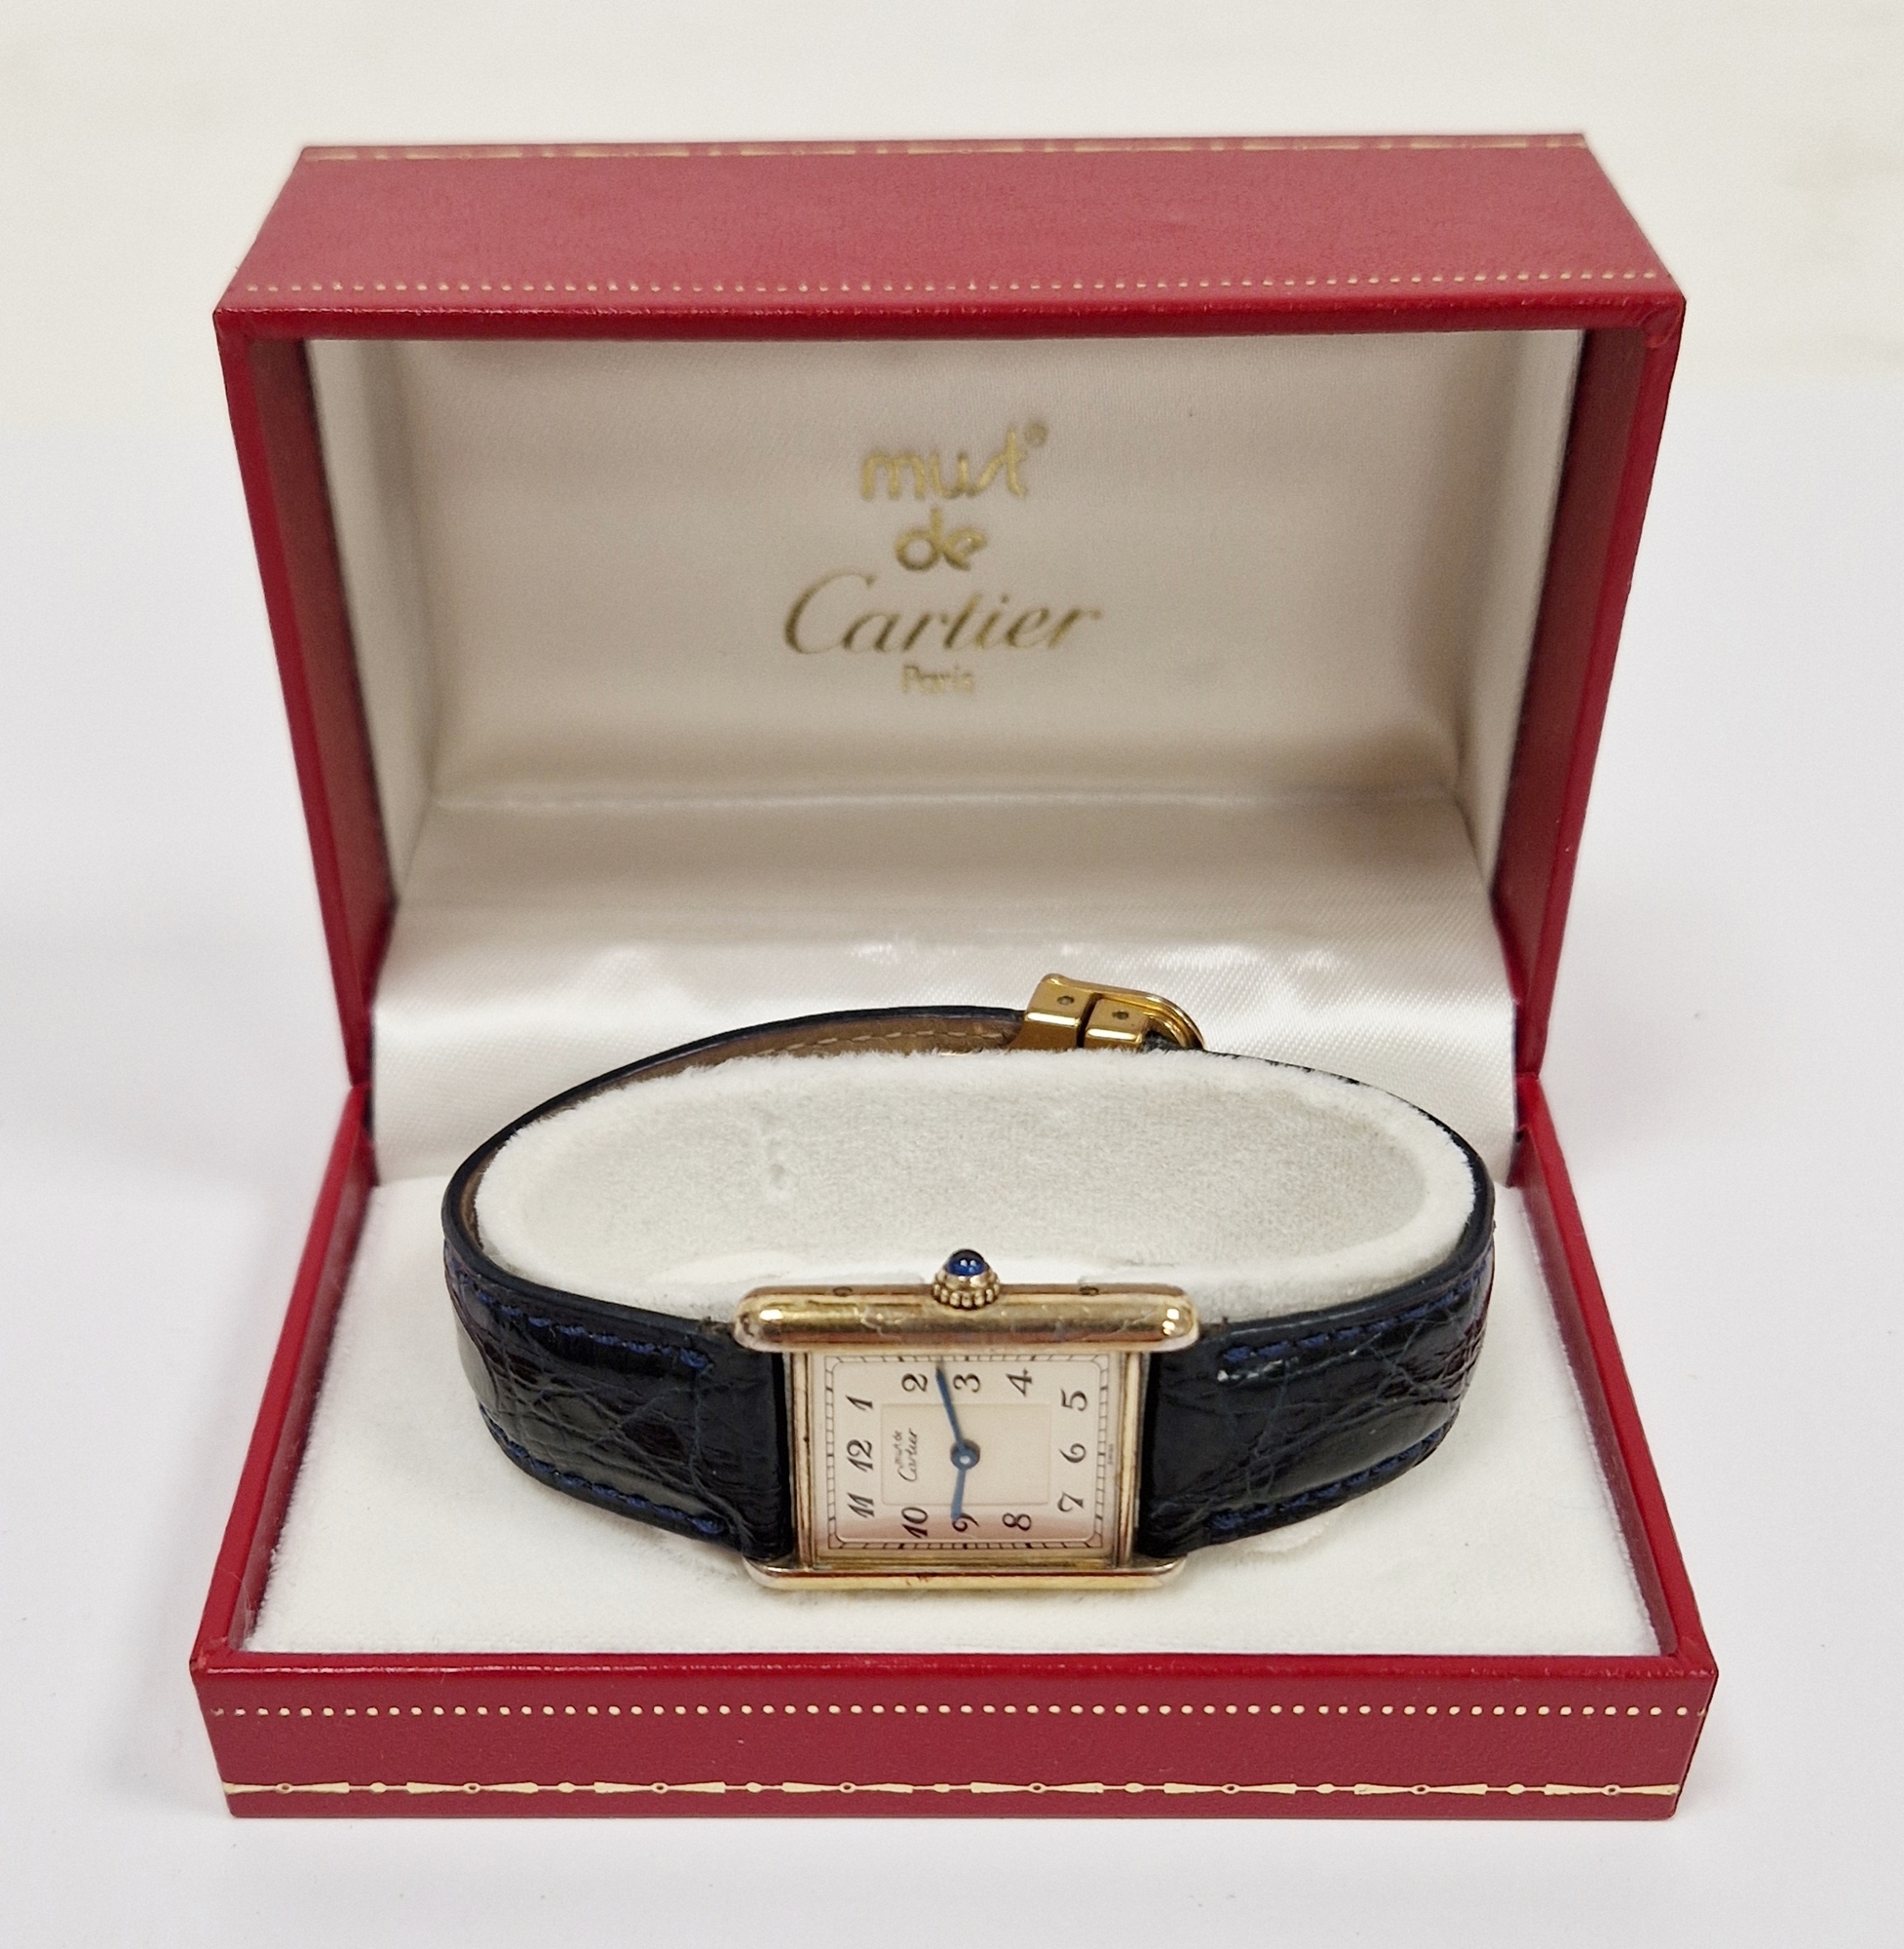 Lady's Must de Cartier Vermeil Tank quartz wristwatch, the rectangular dial with Arabic numerals